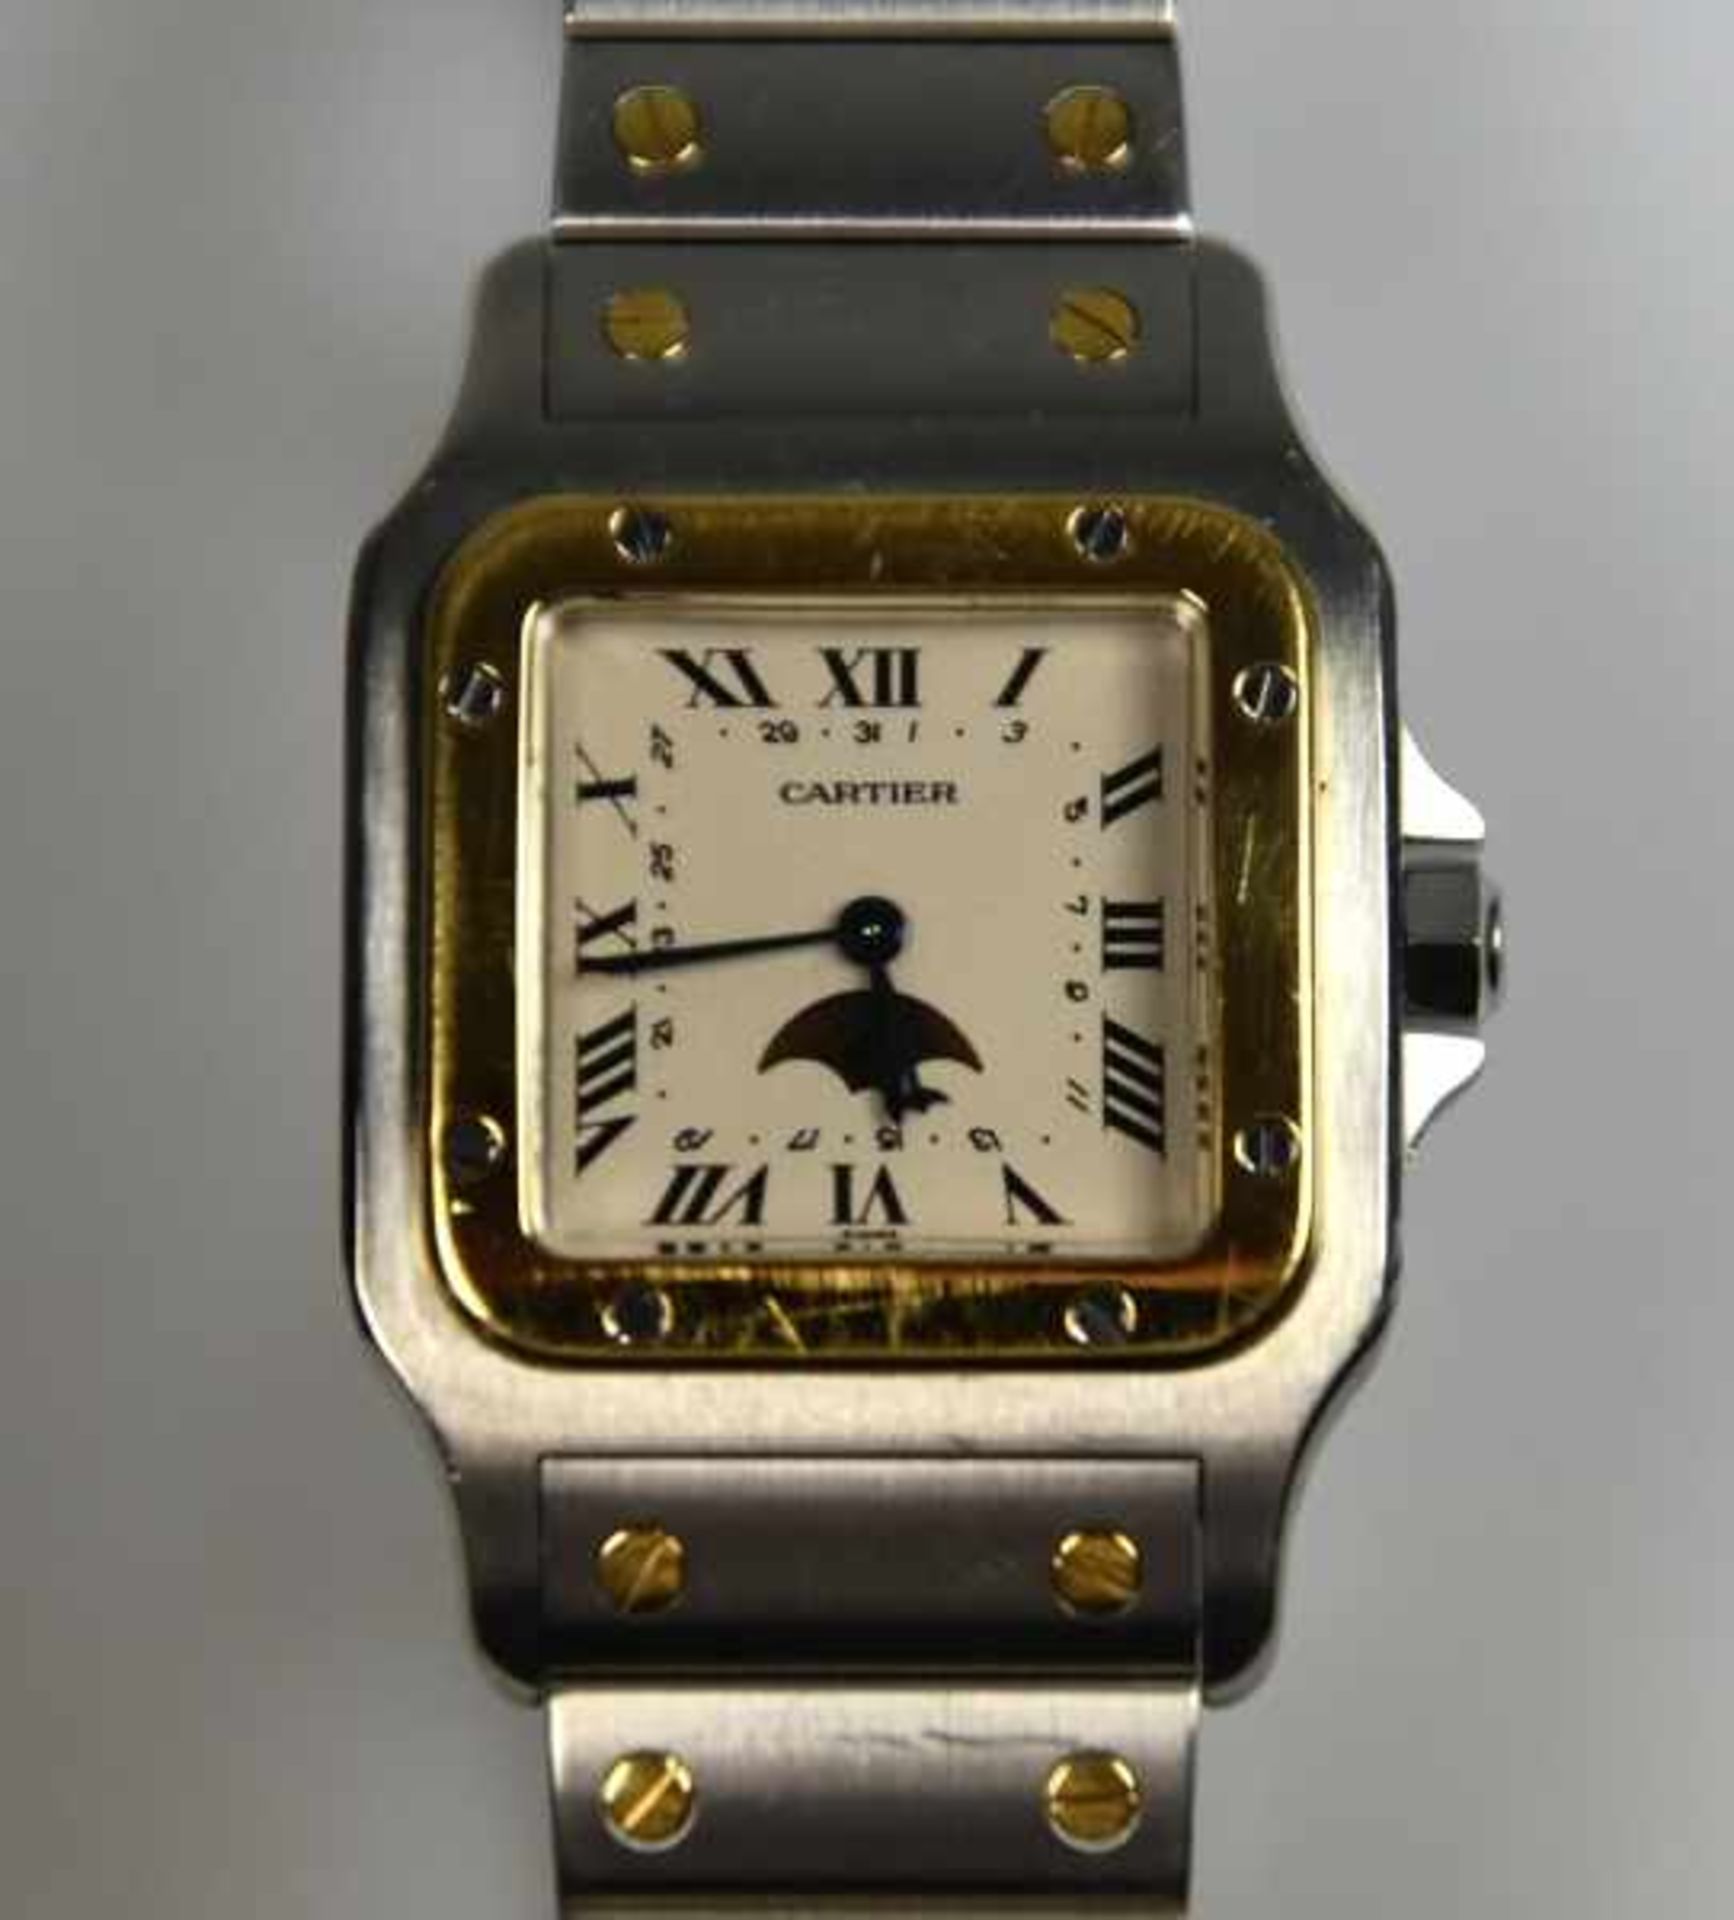 HERREN-ARMBANDUHR Cartier, Santos, Quartz, Stahlgehäuse mit Goldlünette, Dekor in Gold 18ct, - Image 2 of 4